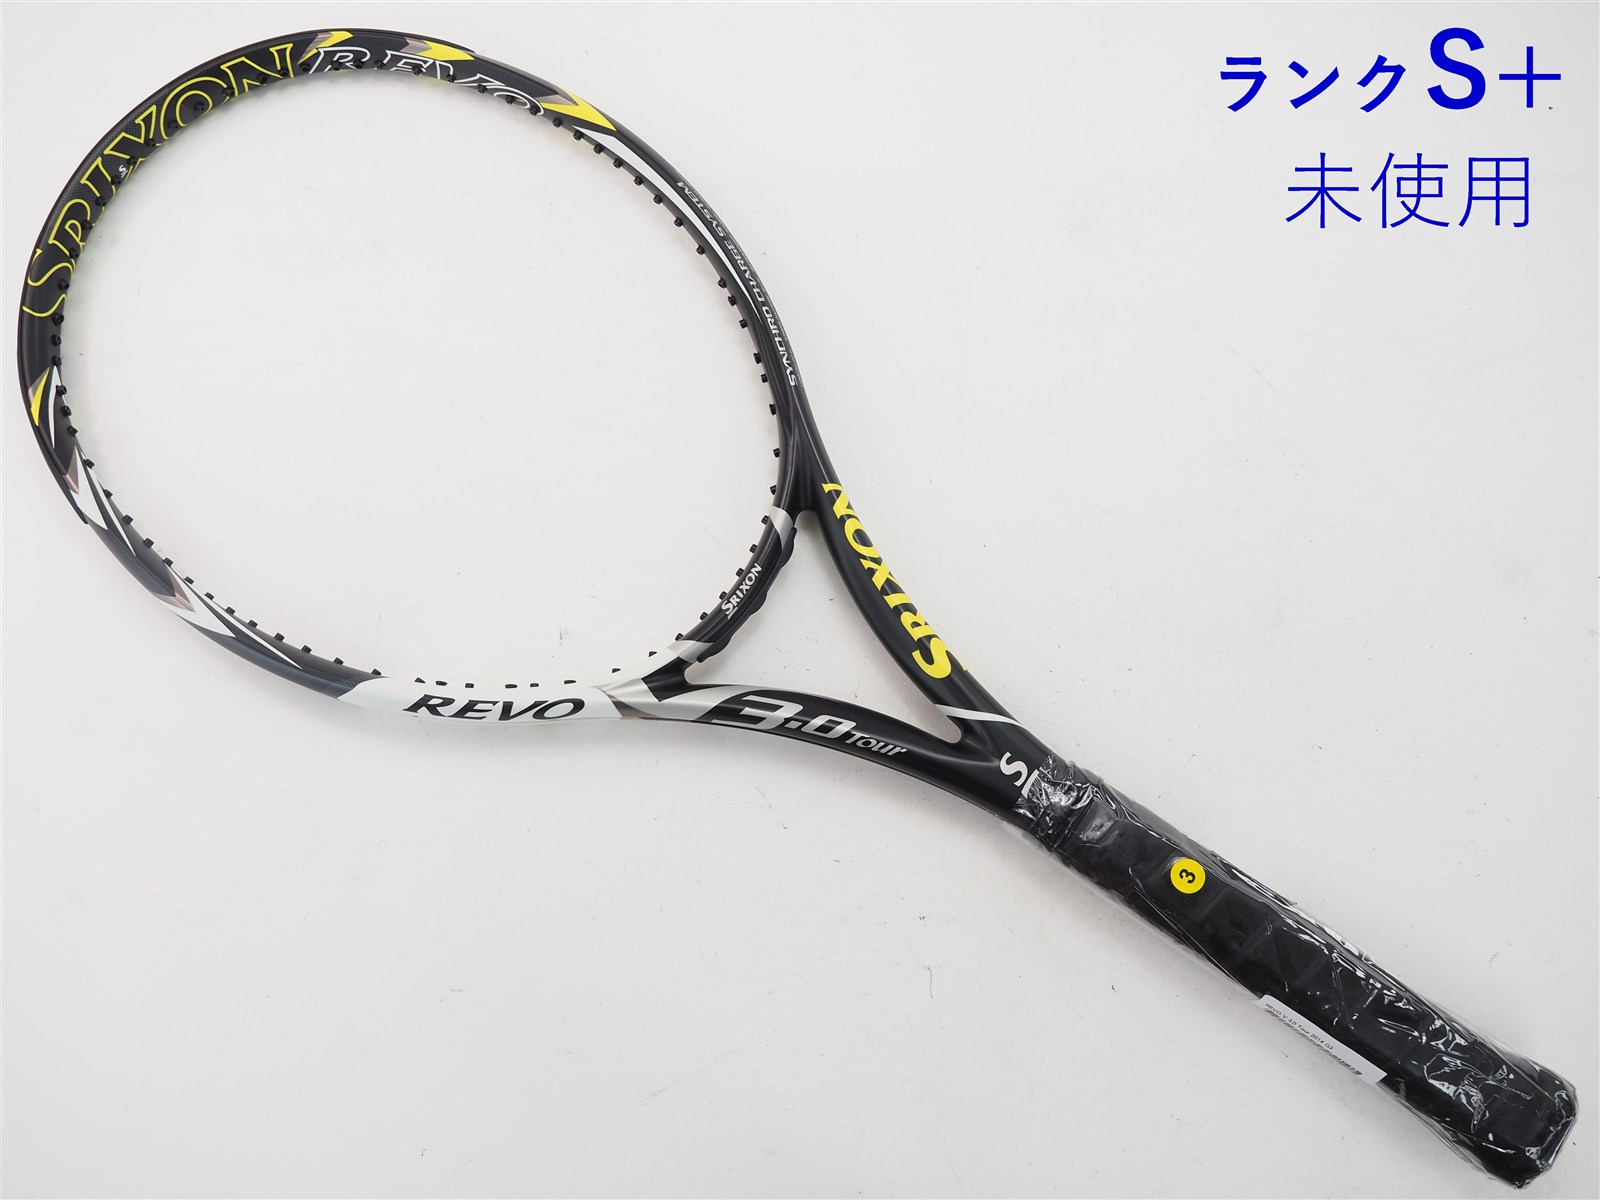 テニスラケット スリクソン レヴォ ブイ 3.0 2012年モデル【一部